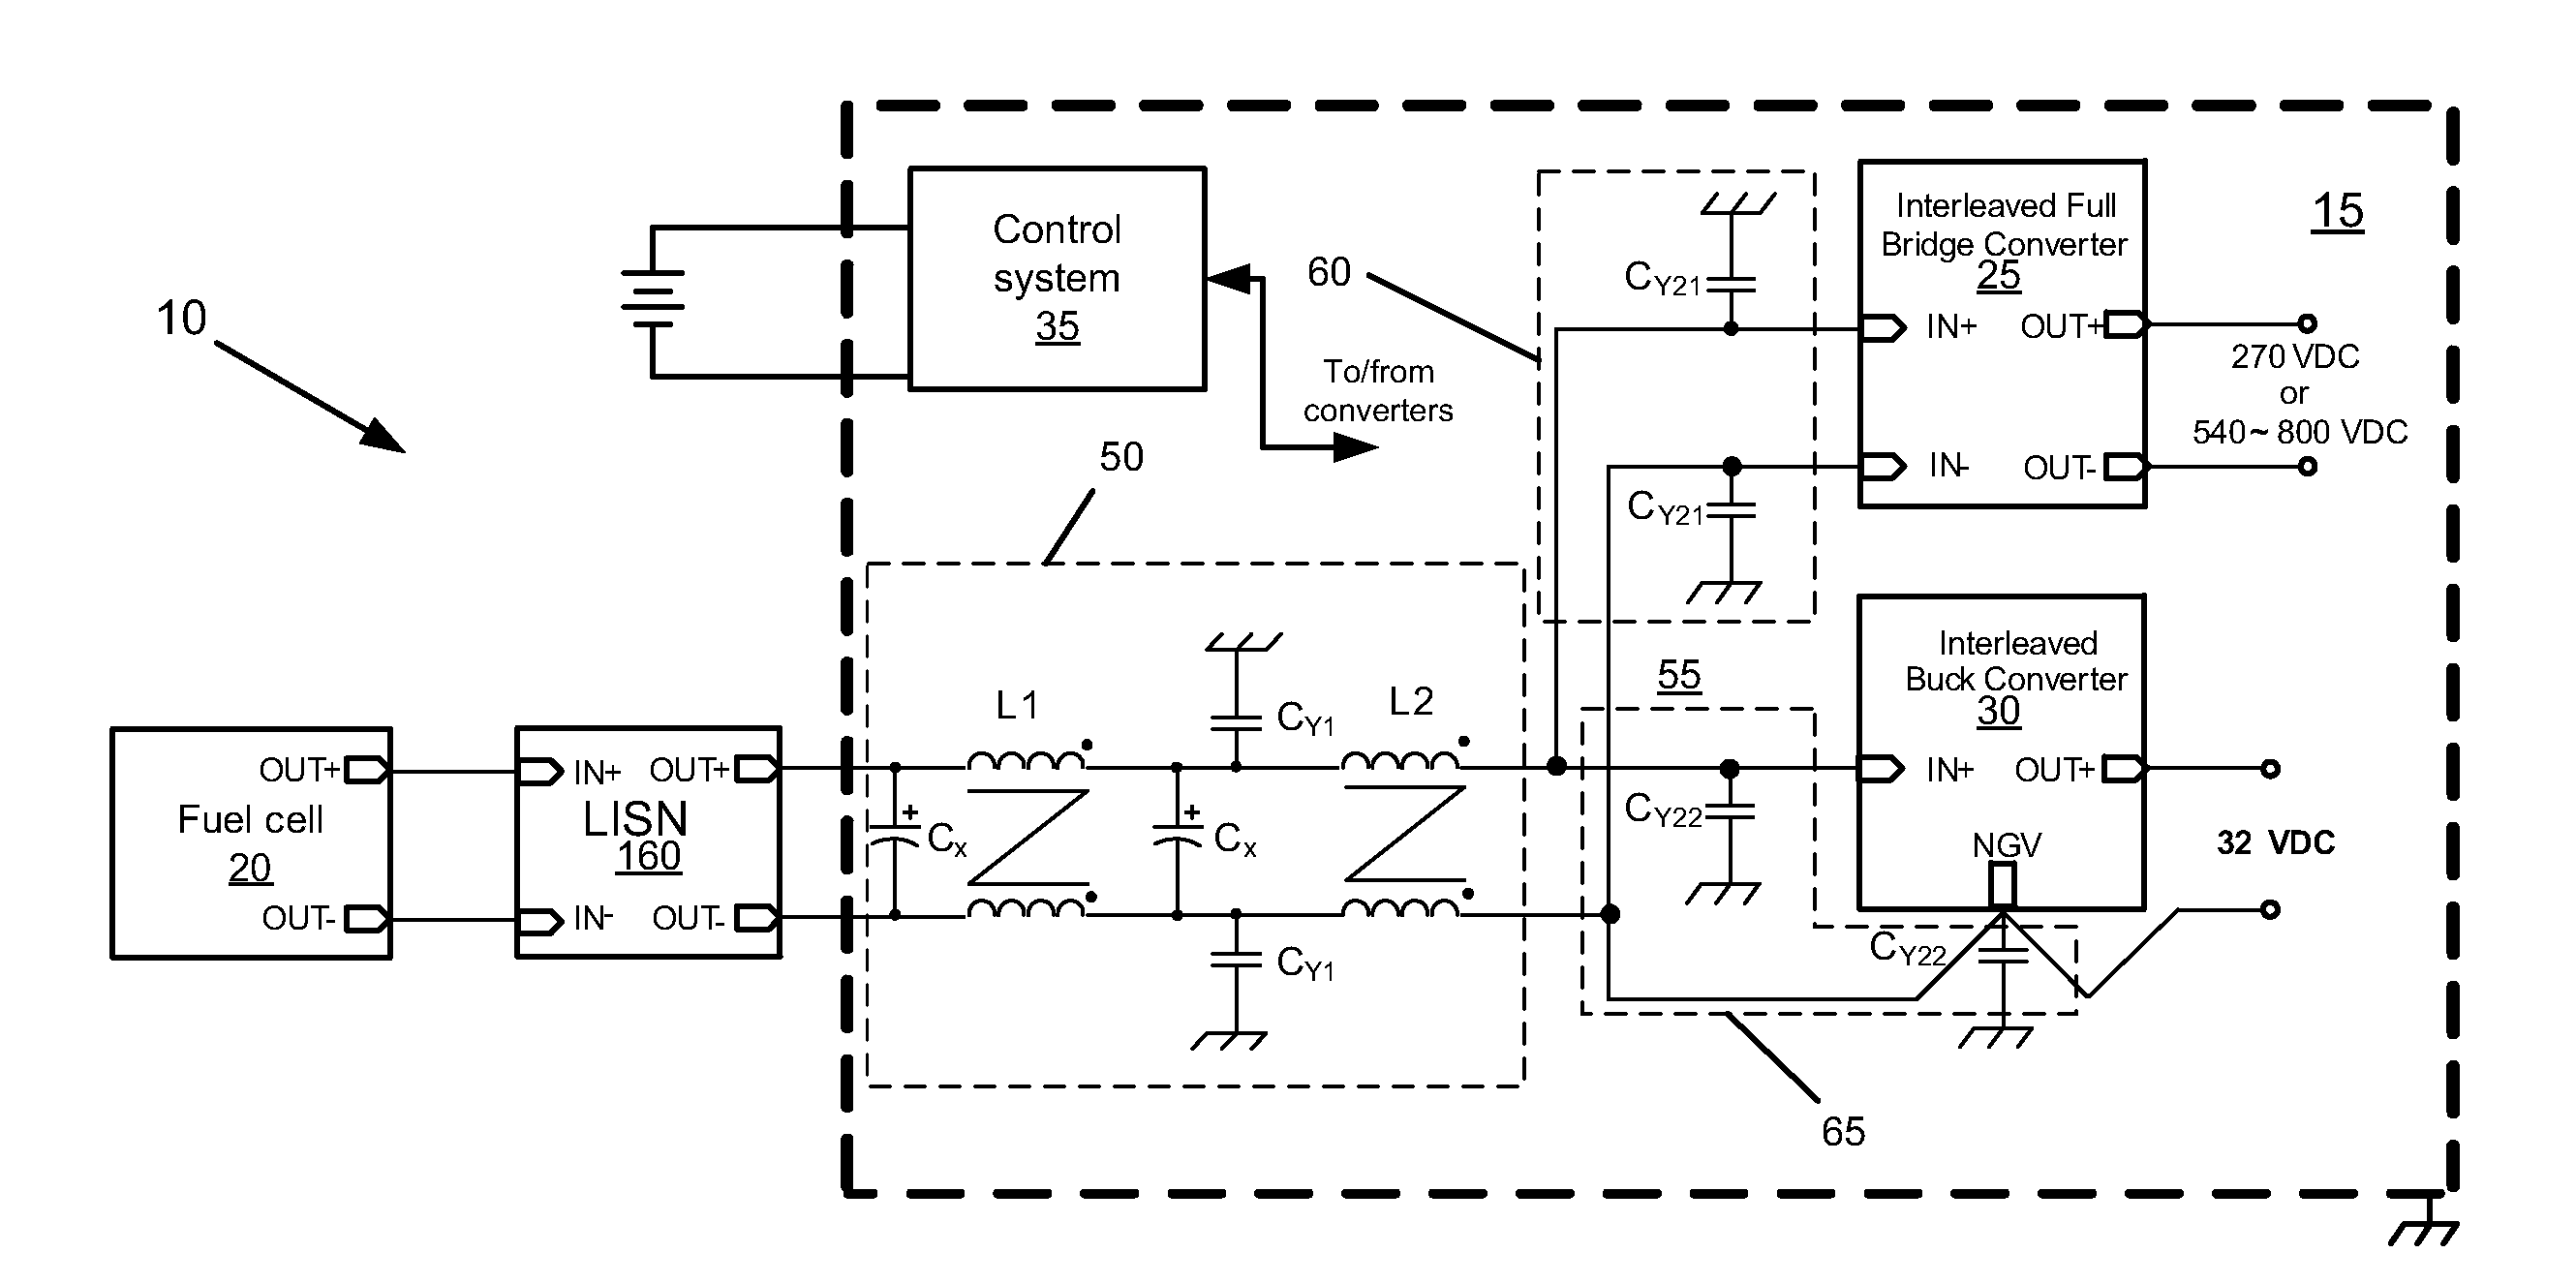 Power converter having EMI filter common to multiple converters